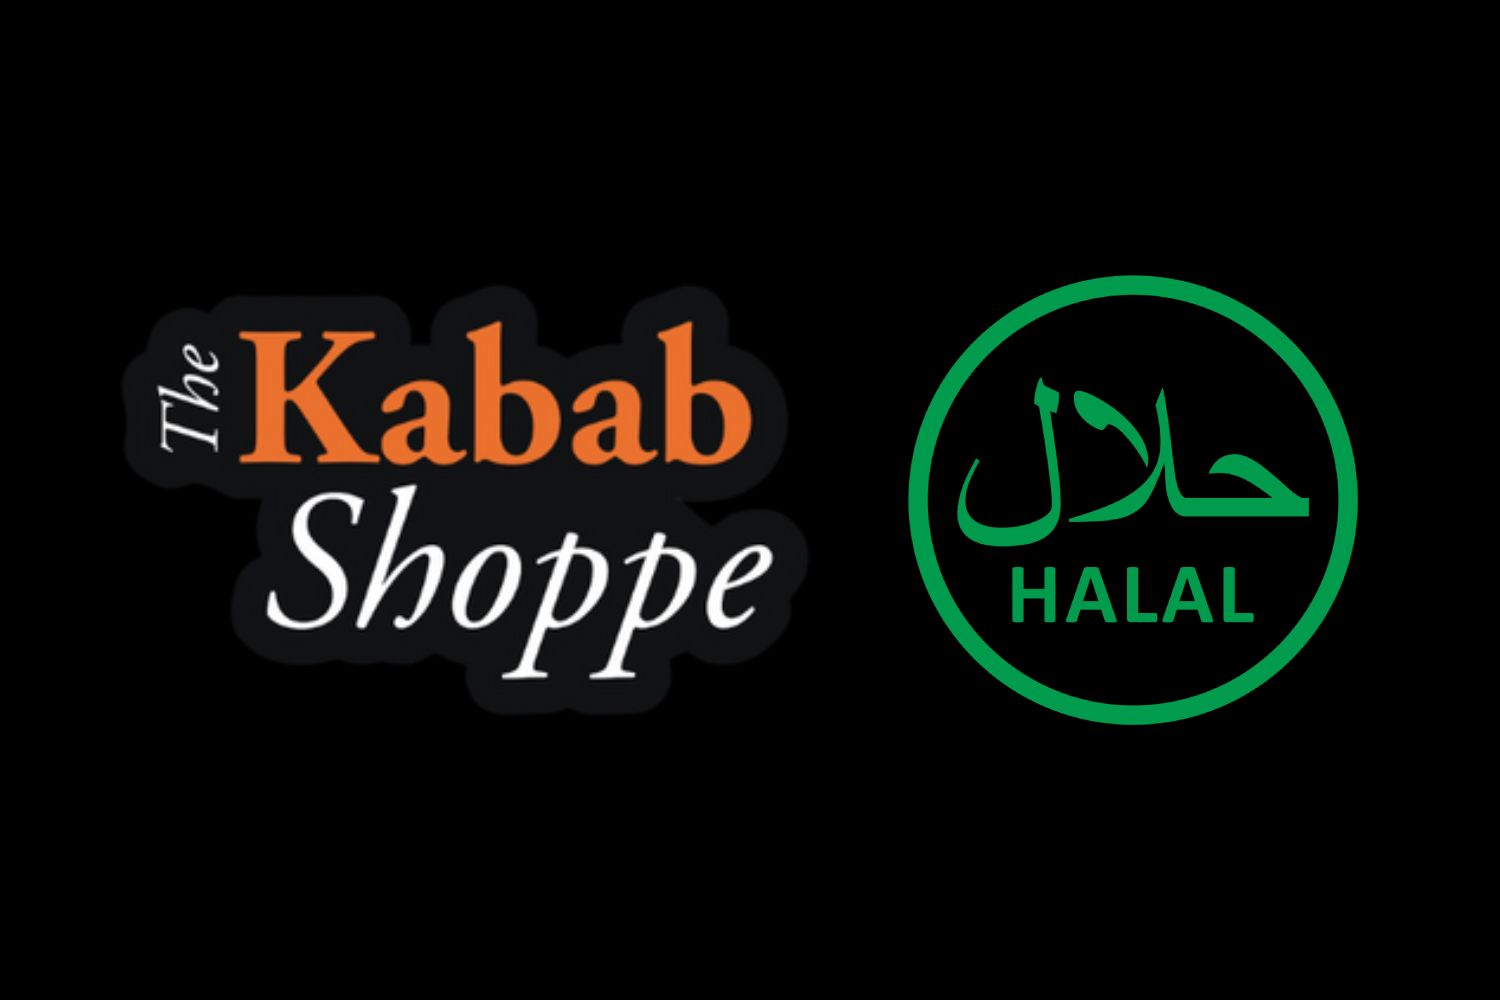 is kebab shop halal?